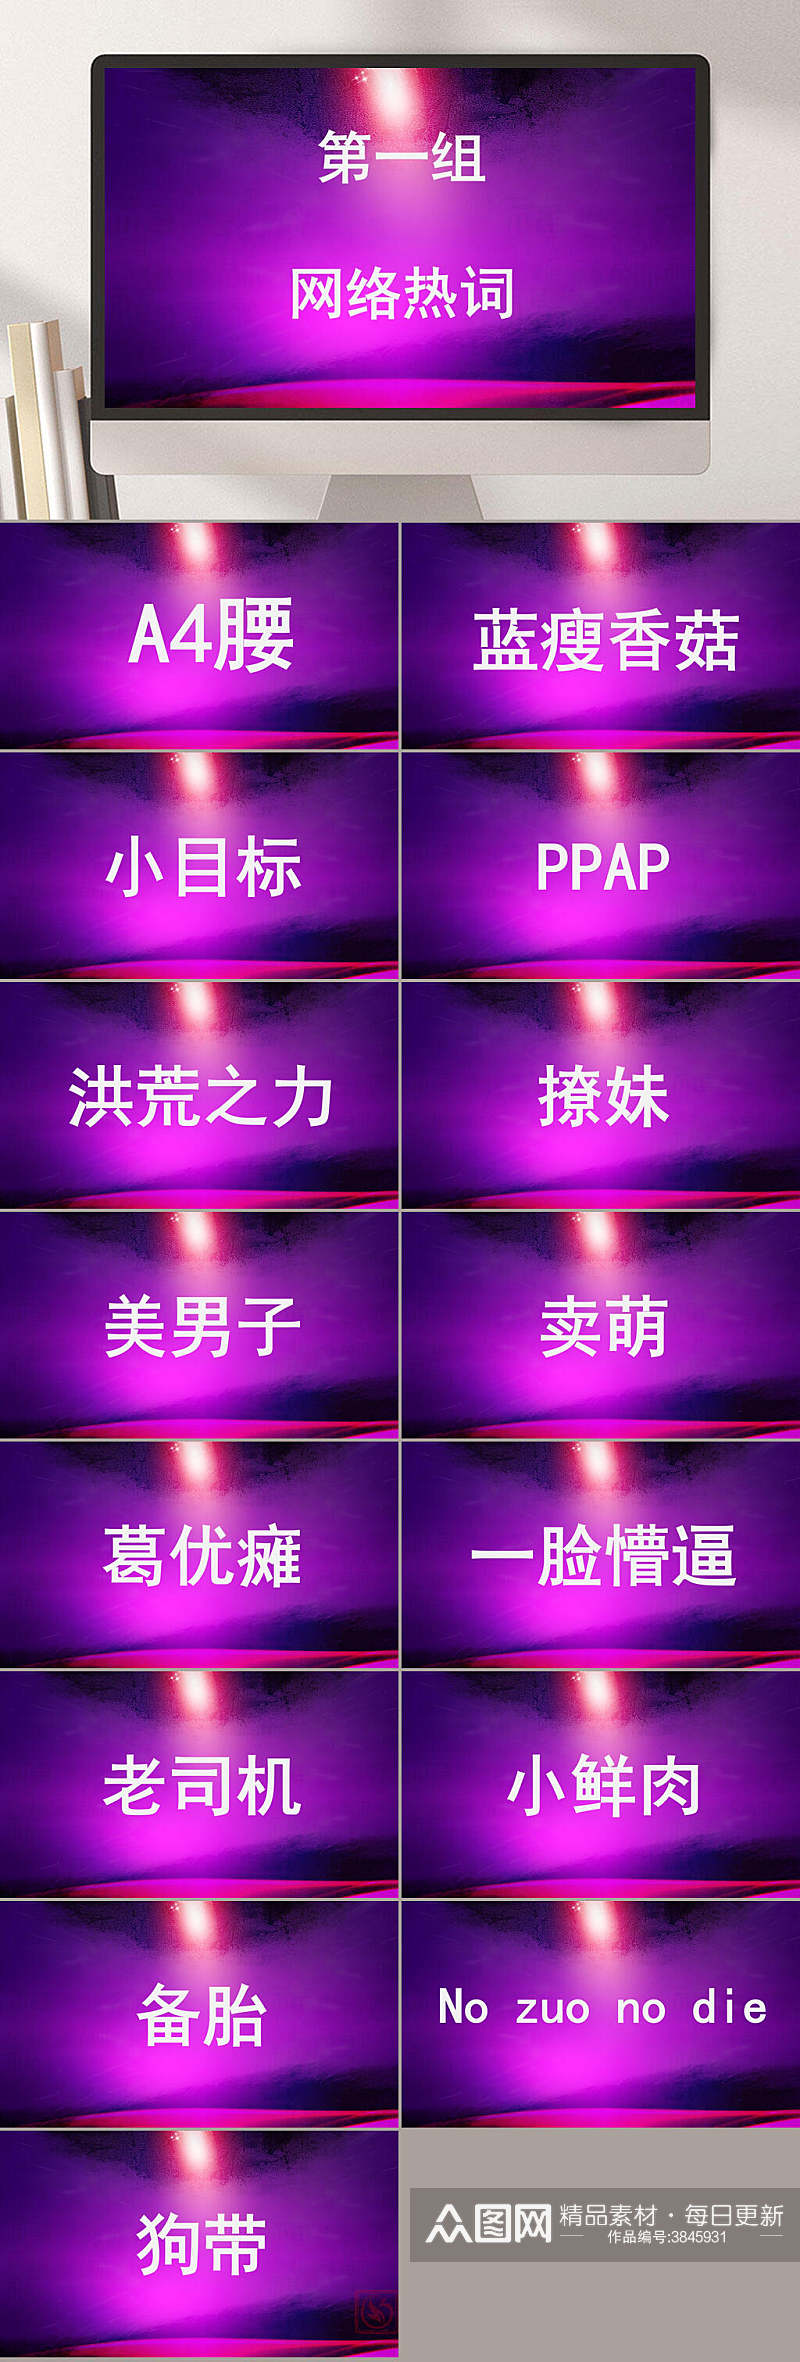 第一组网络热词耀眼紫色你比划我来猜PPT素材